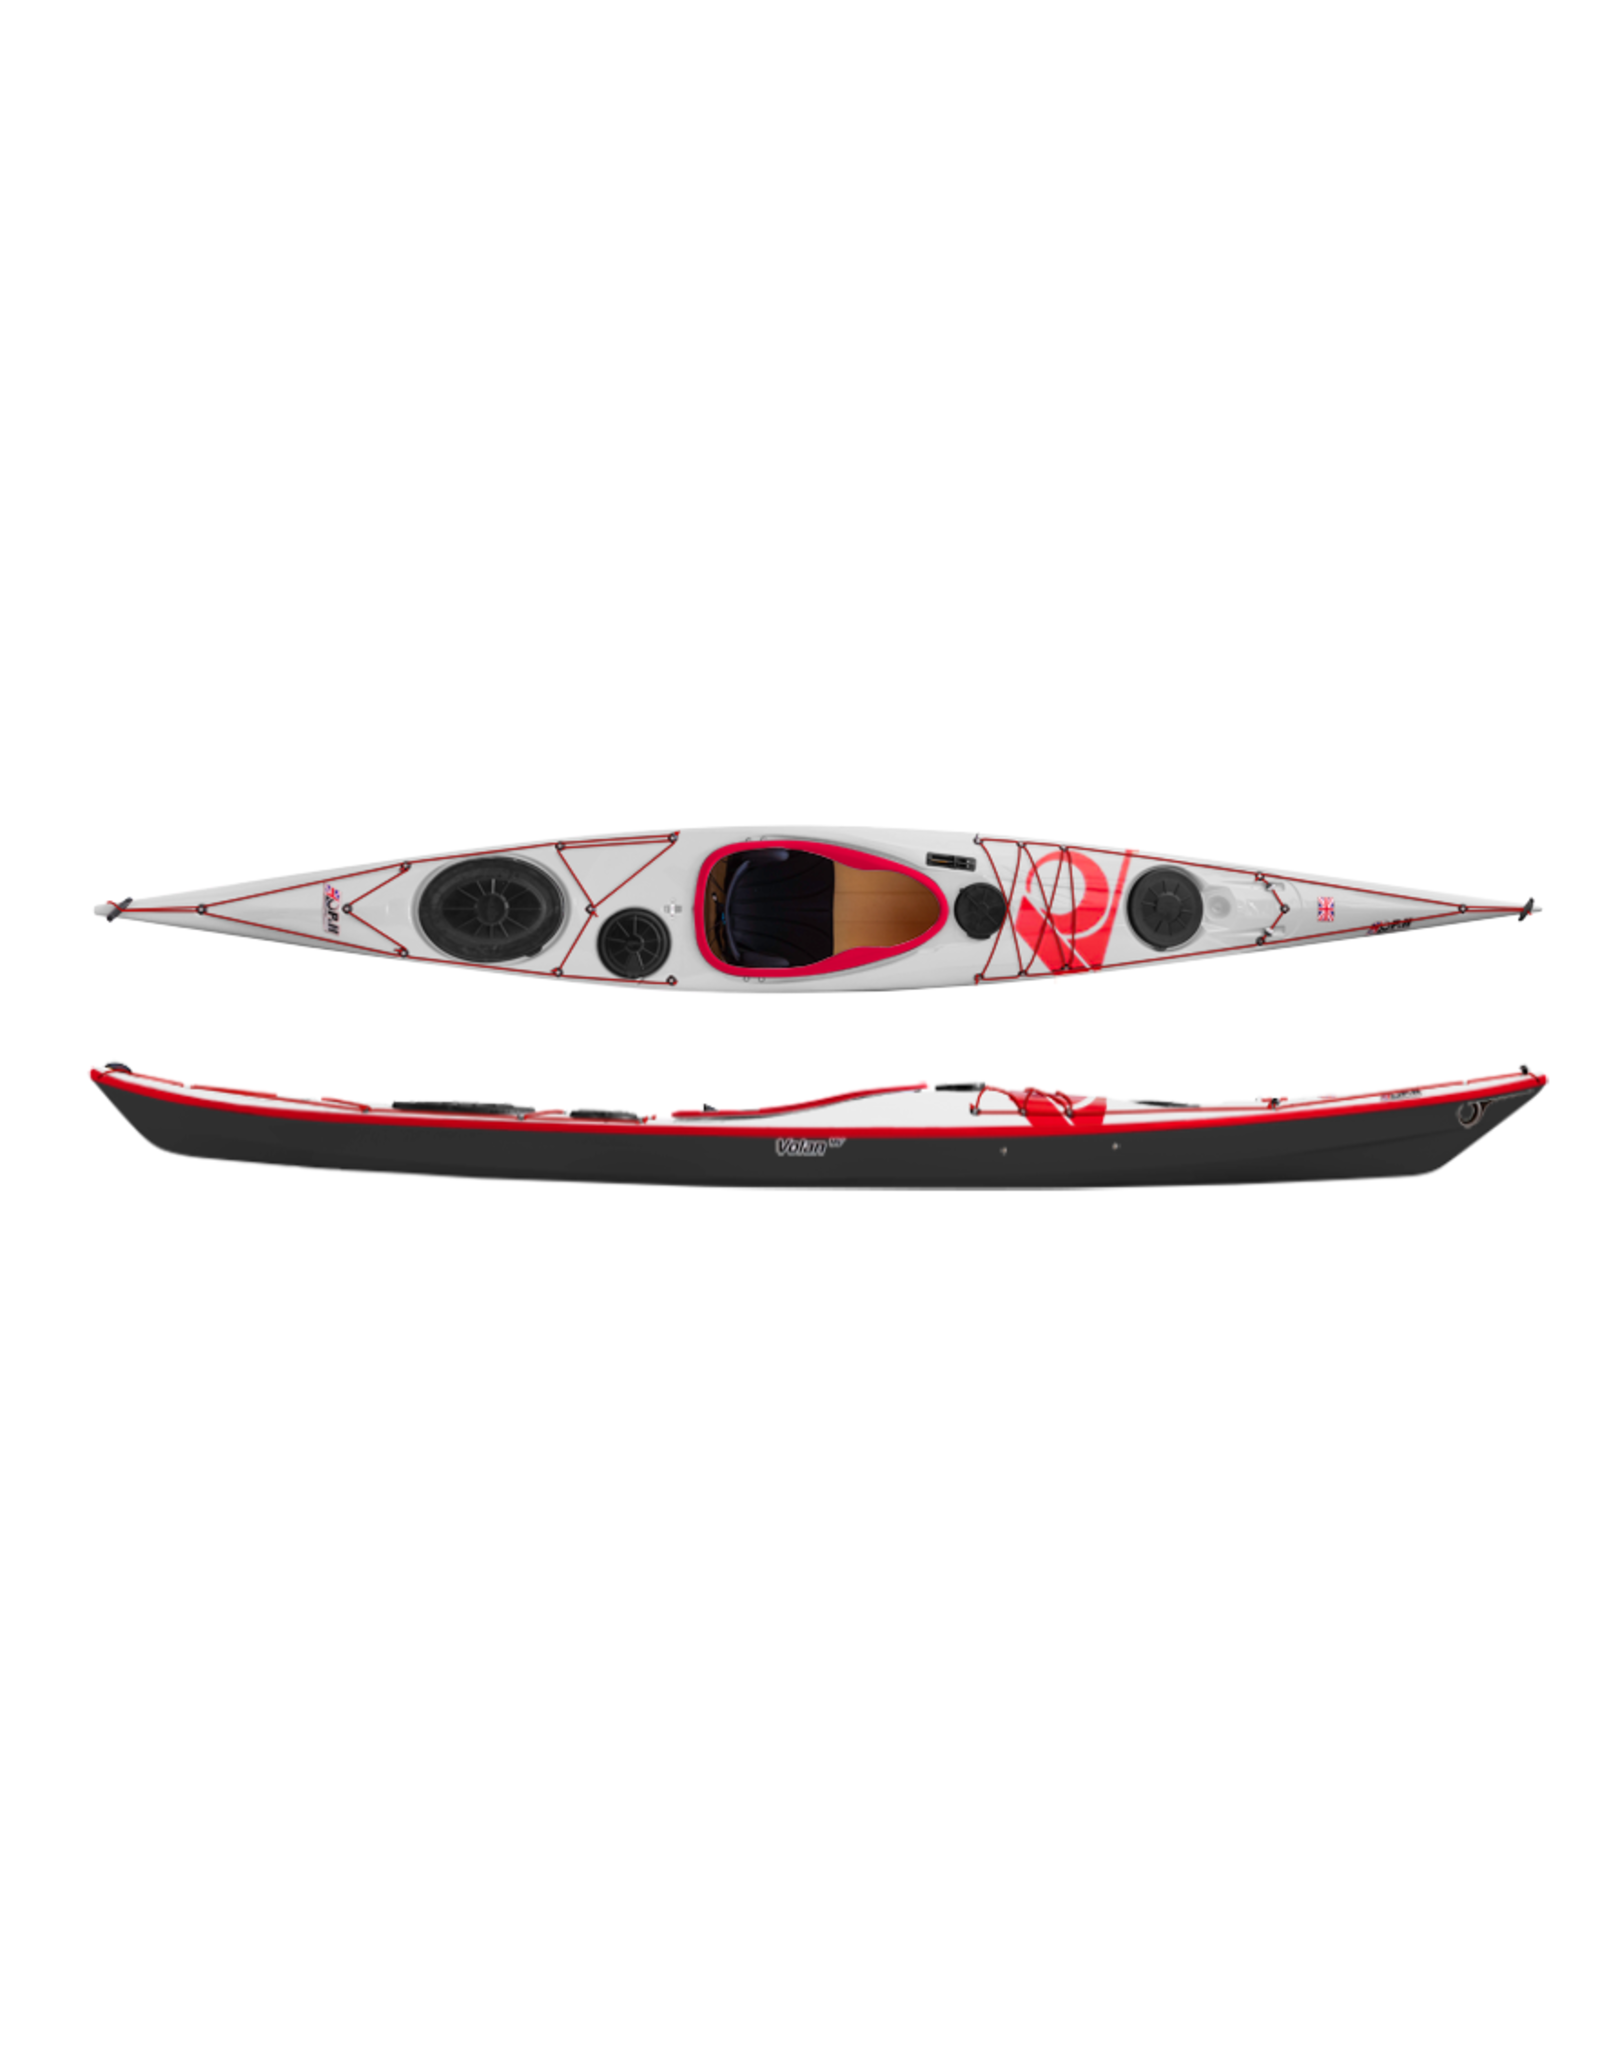 P&H Custom Sea Kayaks P&H kayak Volan 158 Performance Kevlar/Diolen White/Black/Red (2022)